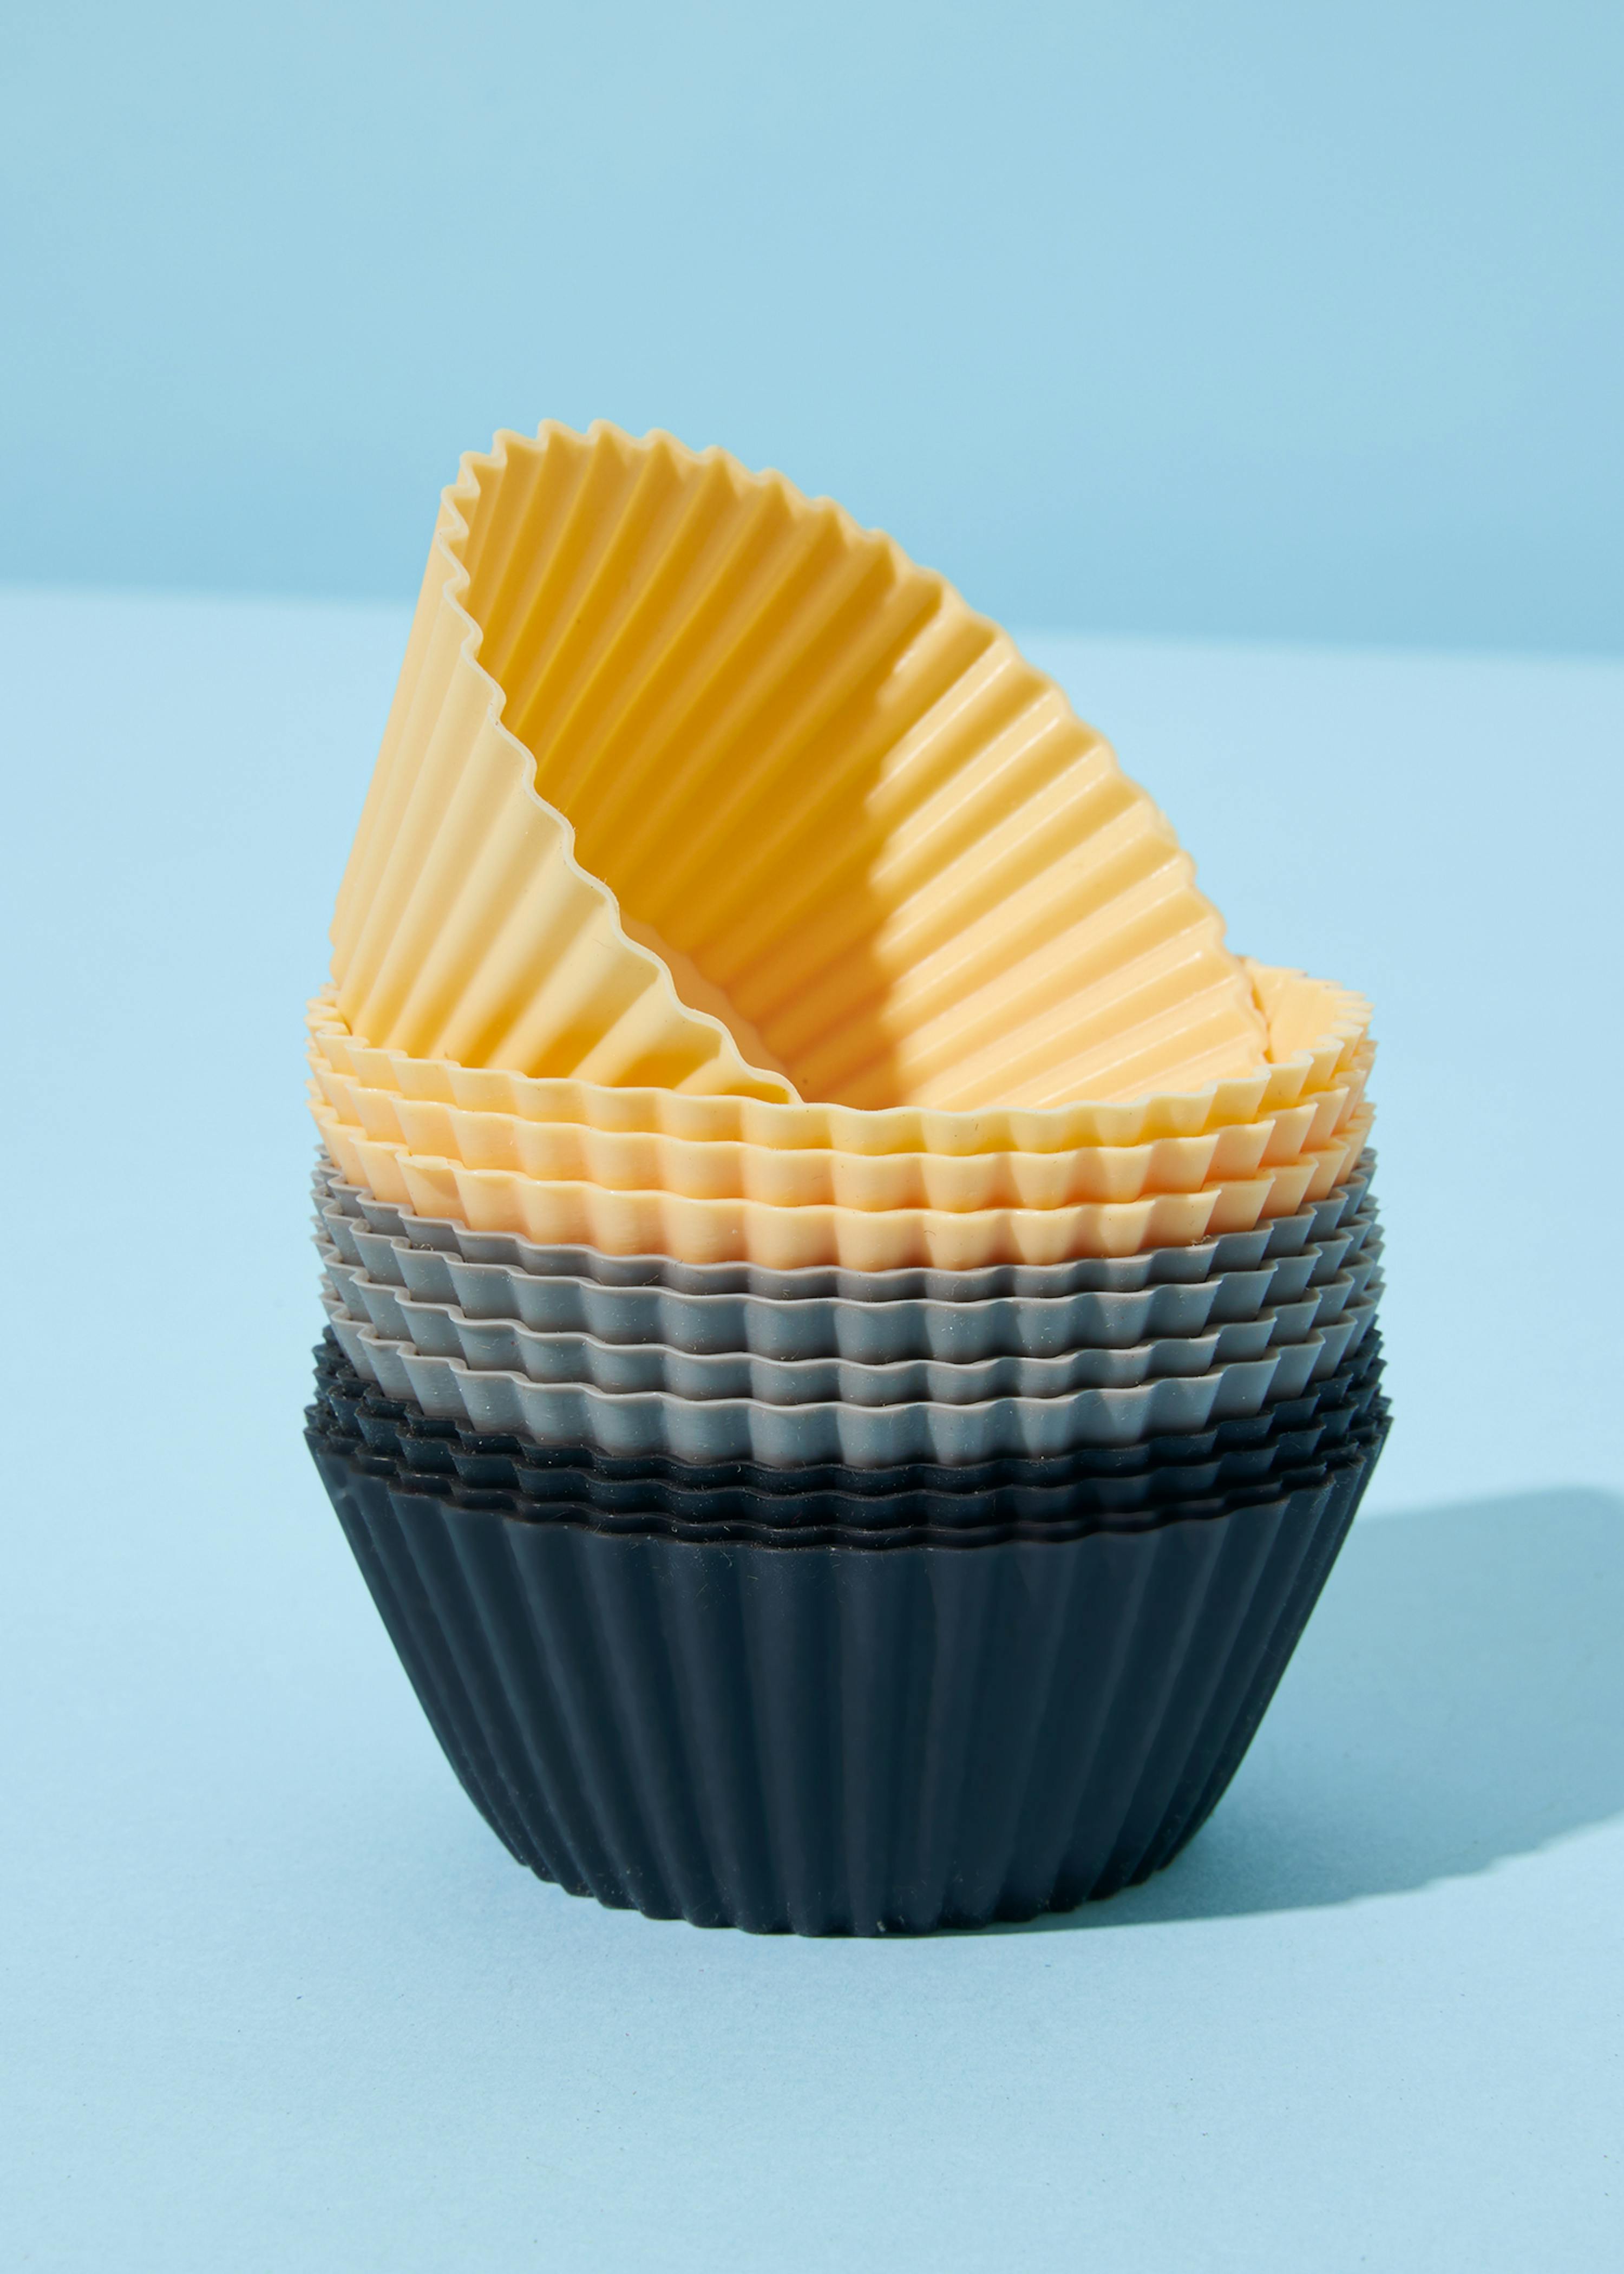 Stampi per muffin in silicone - acquista ora!